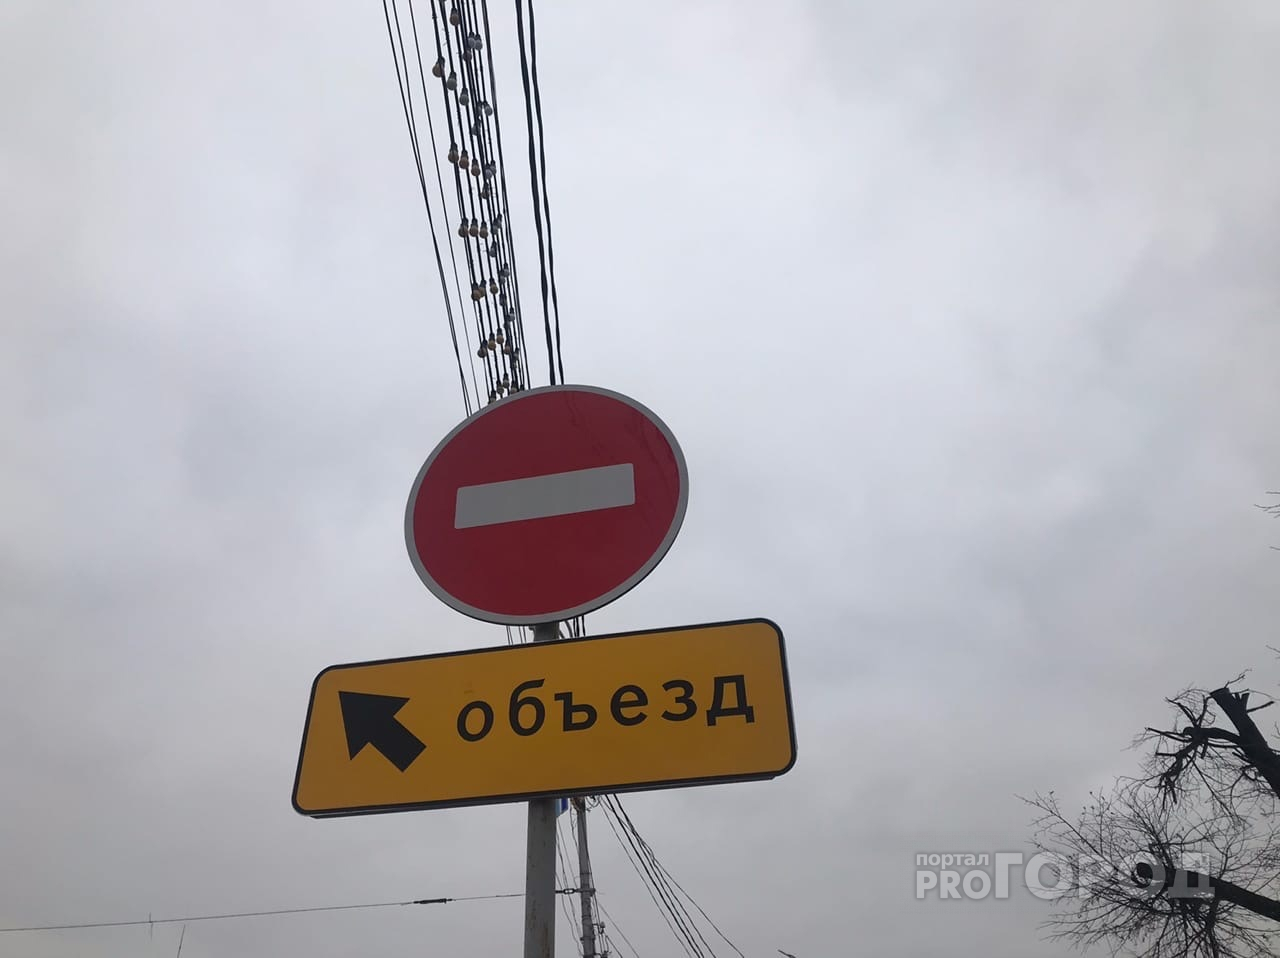 Дорогу между Ряжским и Куйбышевским шоссе перекрыли